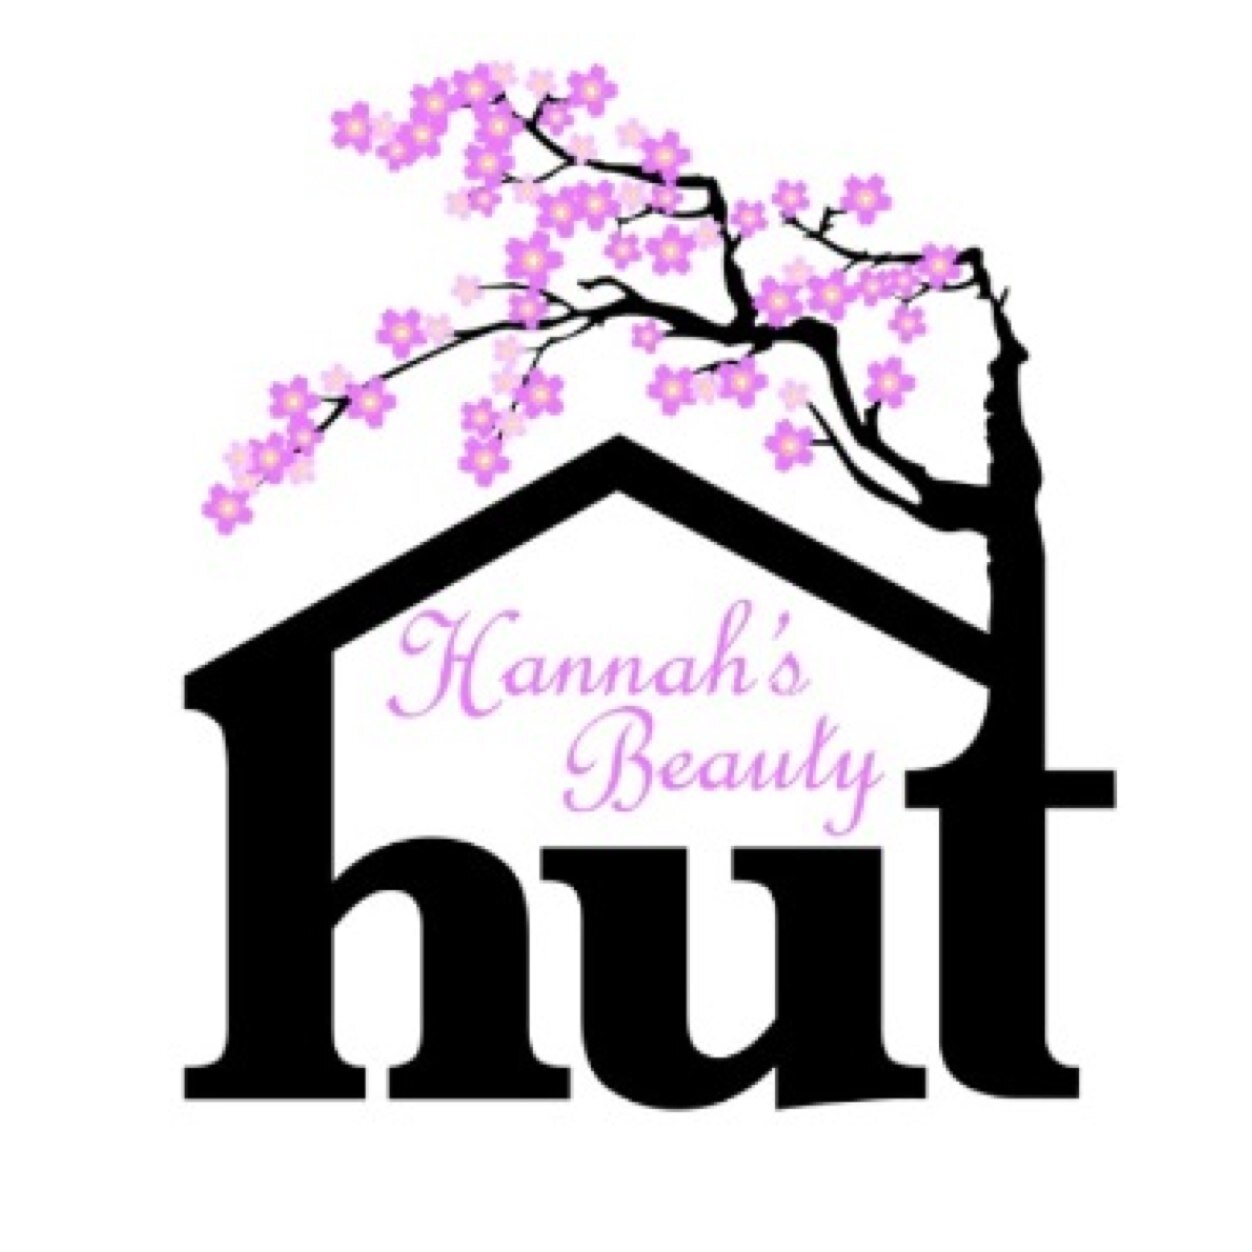 Hannah Jessett - Beauty Therapist Mobile or at The Beauty Hut Info@hannahsbeautyhut.co.uk Instagram: hannahsbeautyhut